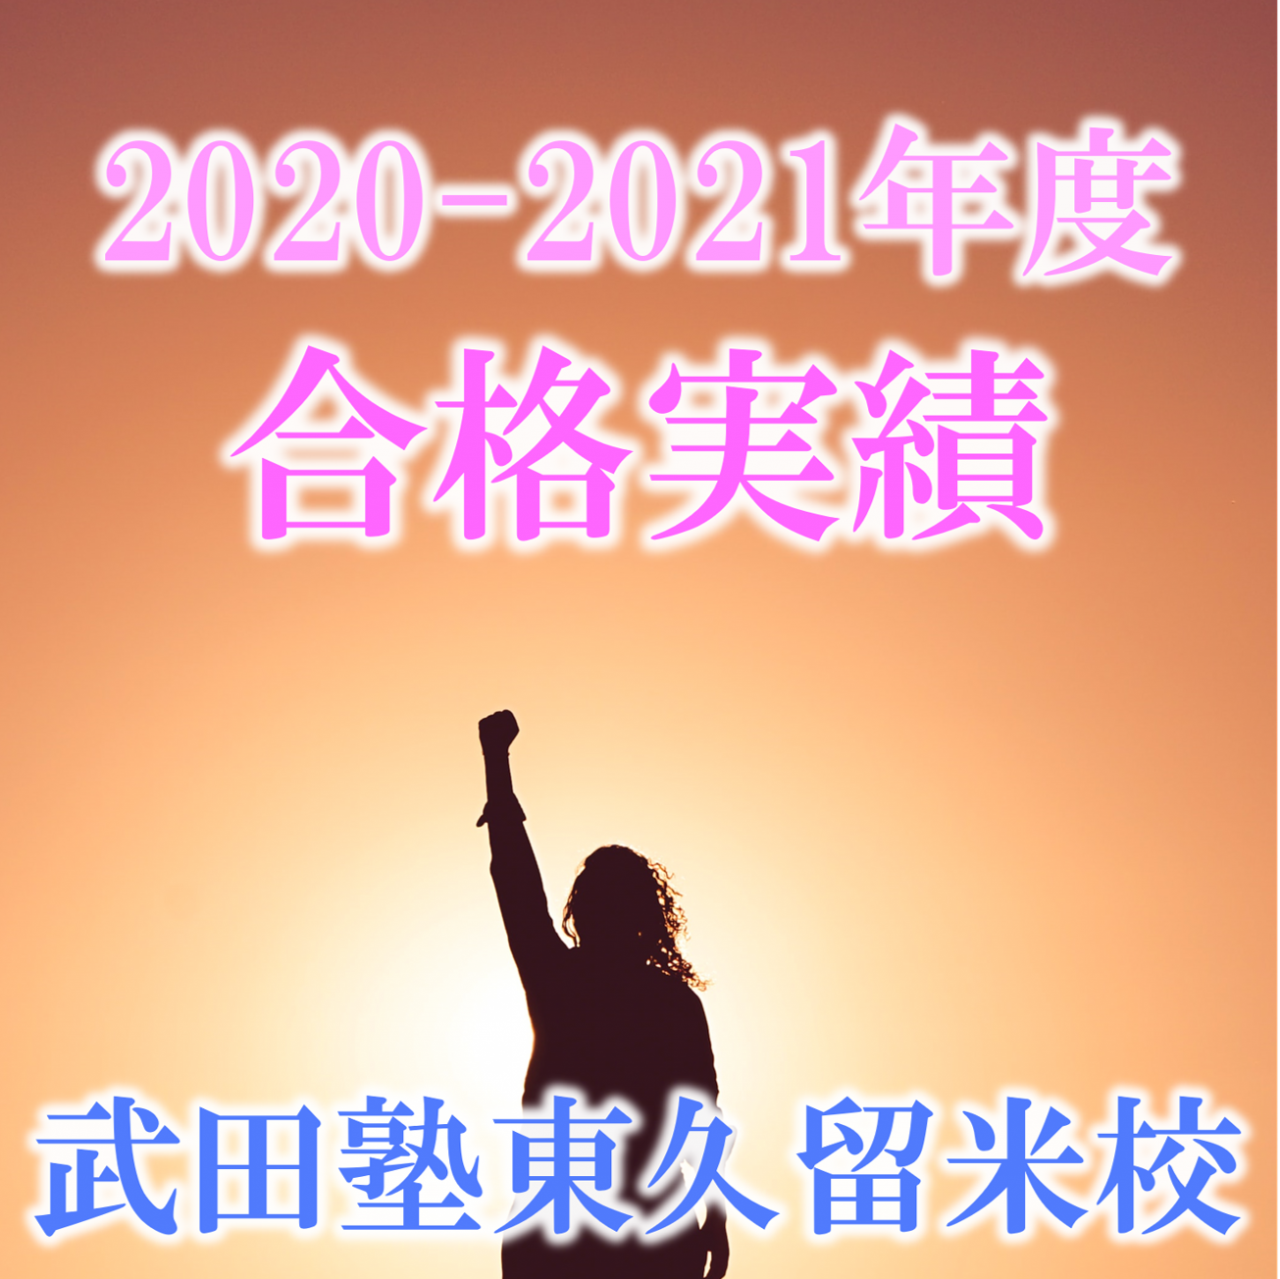 武田塾東久留米校・西東京エリア 2020-2021春の合格実績一覧